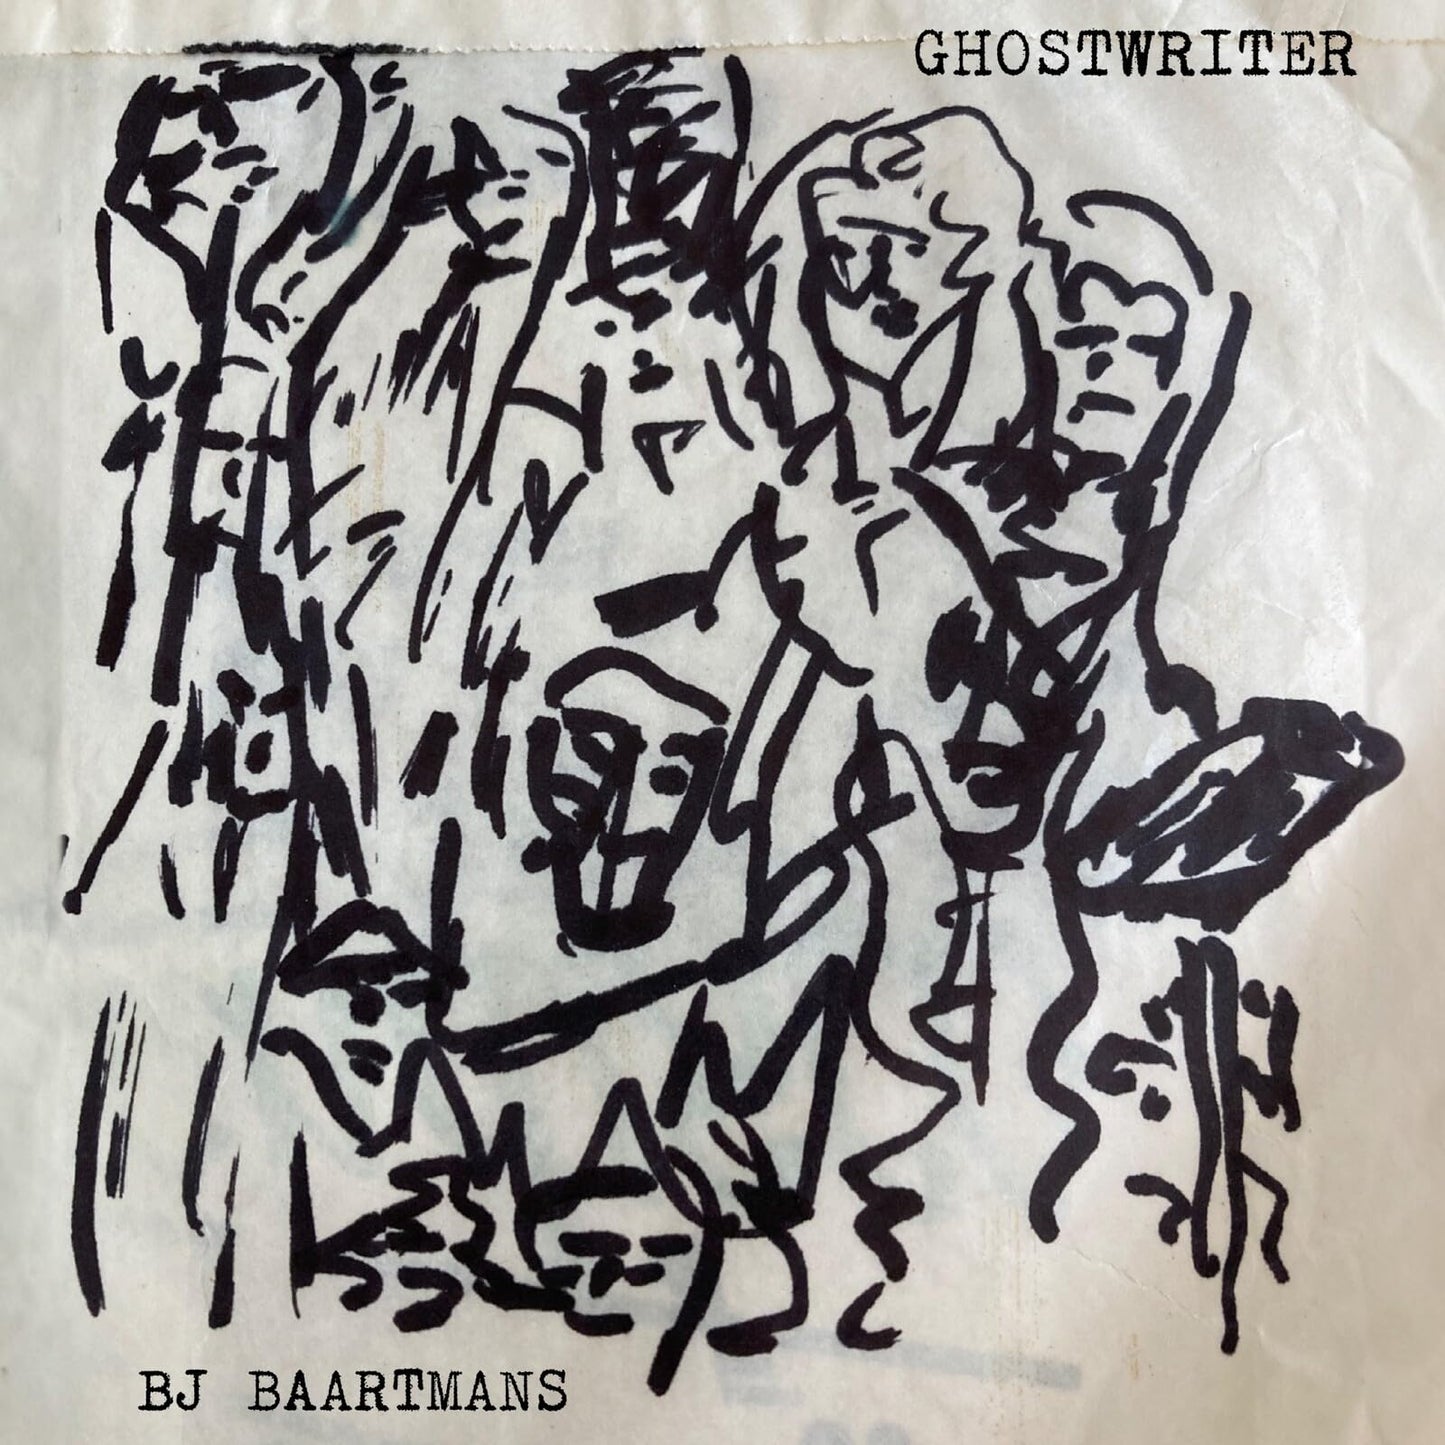 B.J. Baartmans - Ghostwriter - Import CD